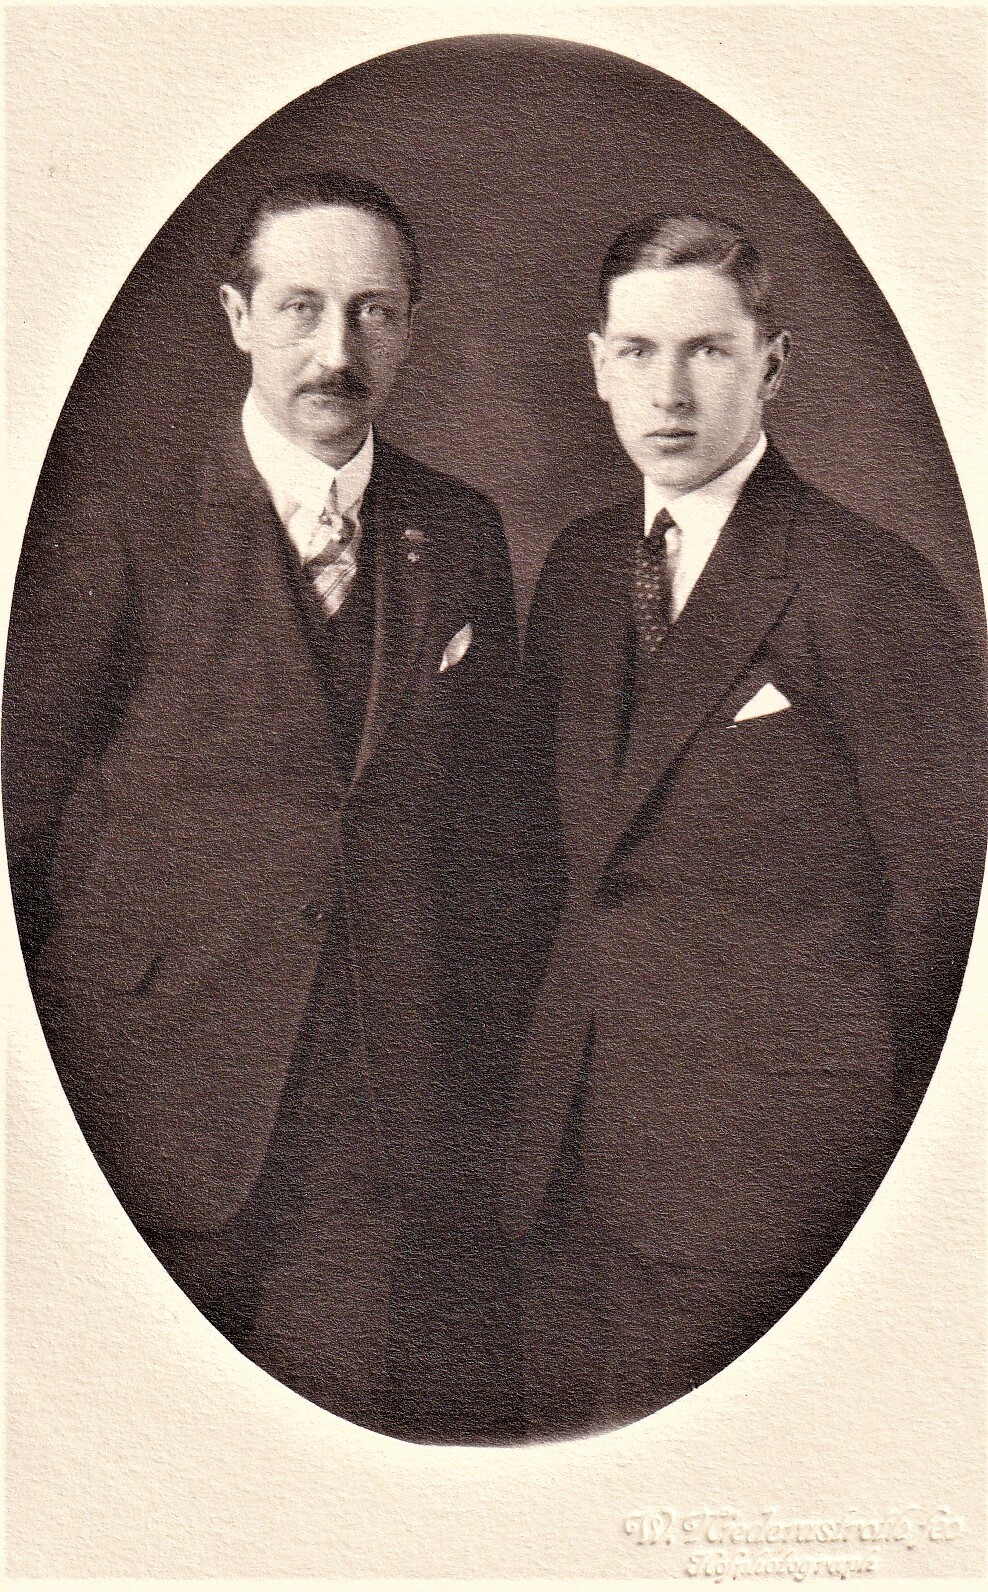 Bildpostkarte mit Foto des August Wilhelm Prinz von Preußen mit seinem Sohn Alexander, 1927 (Schloß Wernigerode GmbH RR-F)